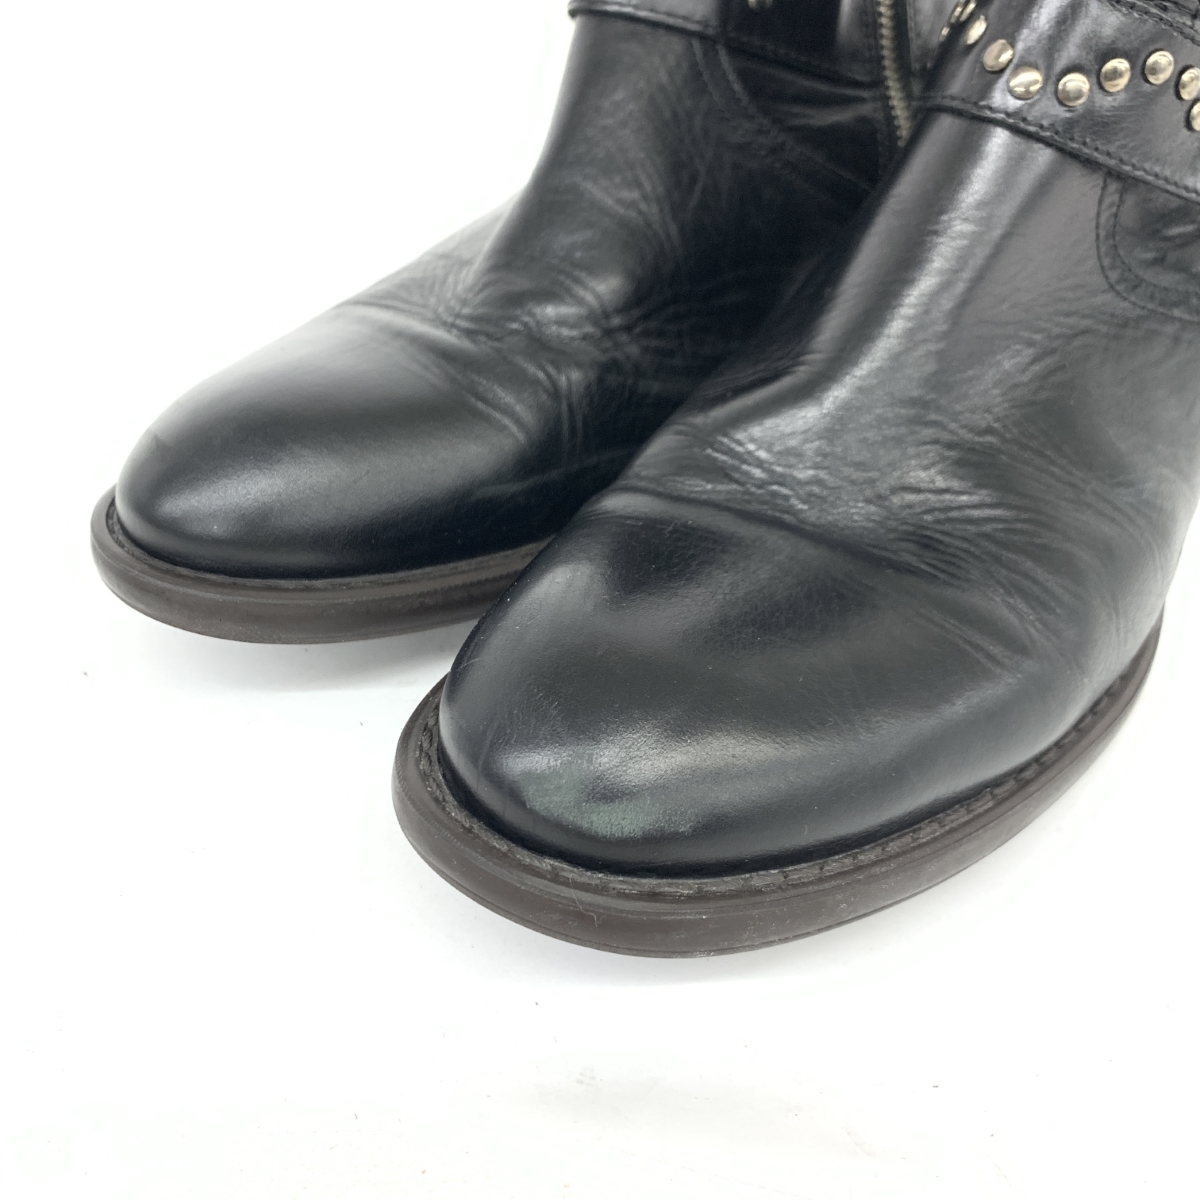 ◆stefanorossi ステファノロッシ ショートブーツ 41◆SR03757 ブラック レザー リング サイドジップ メンズ 靴 boots ワークブーツ_画像9